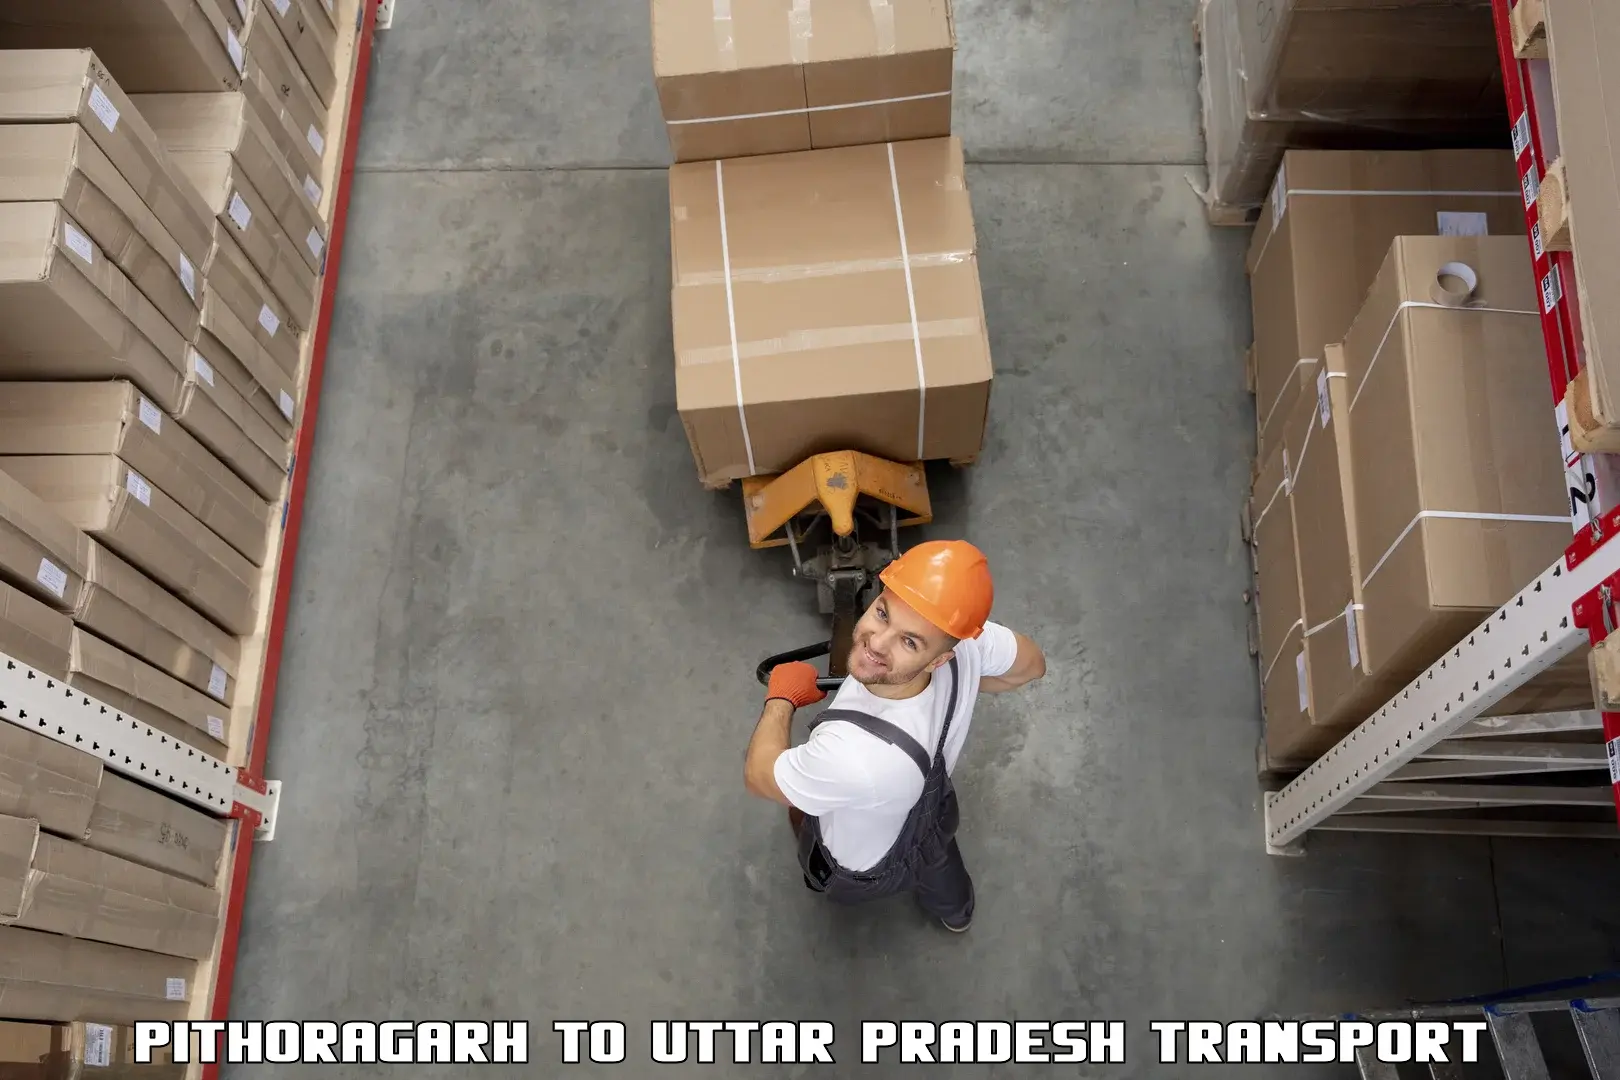 Land transport services Pithoragarh to Budaun